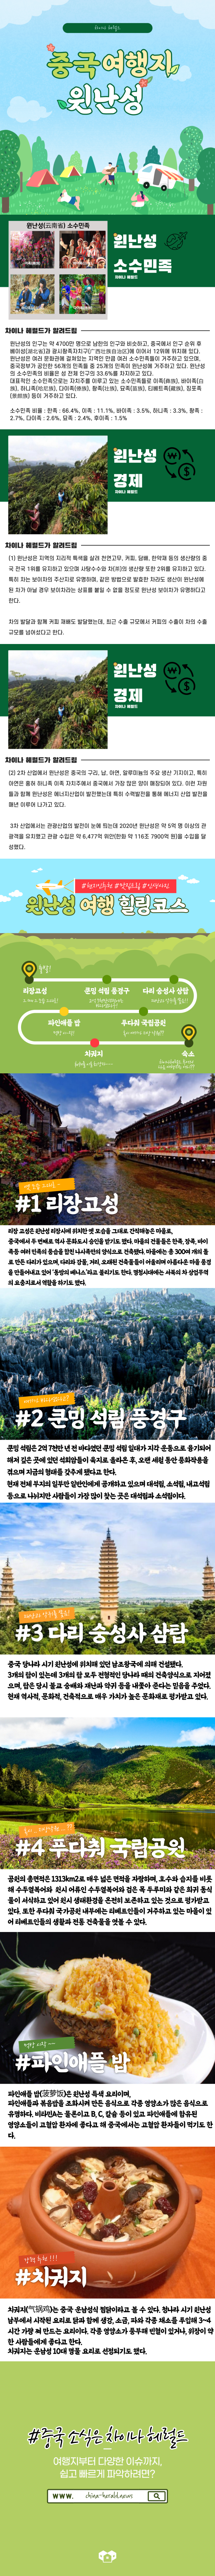 [중국여행지] 윈난성 소개